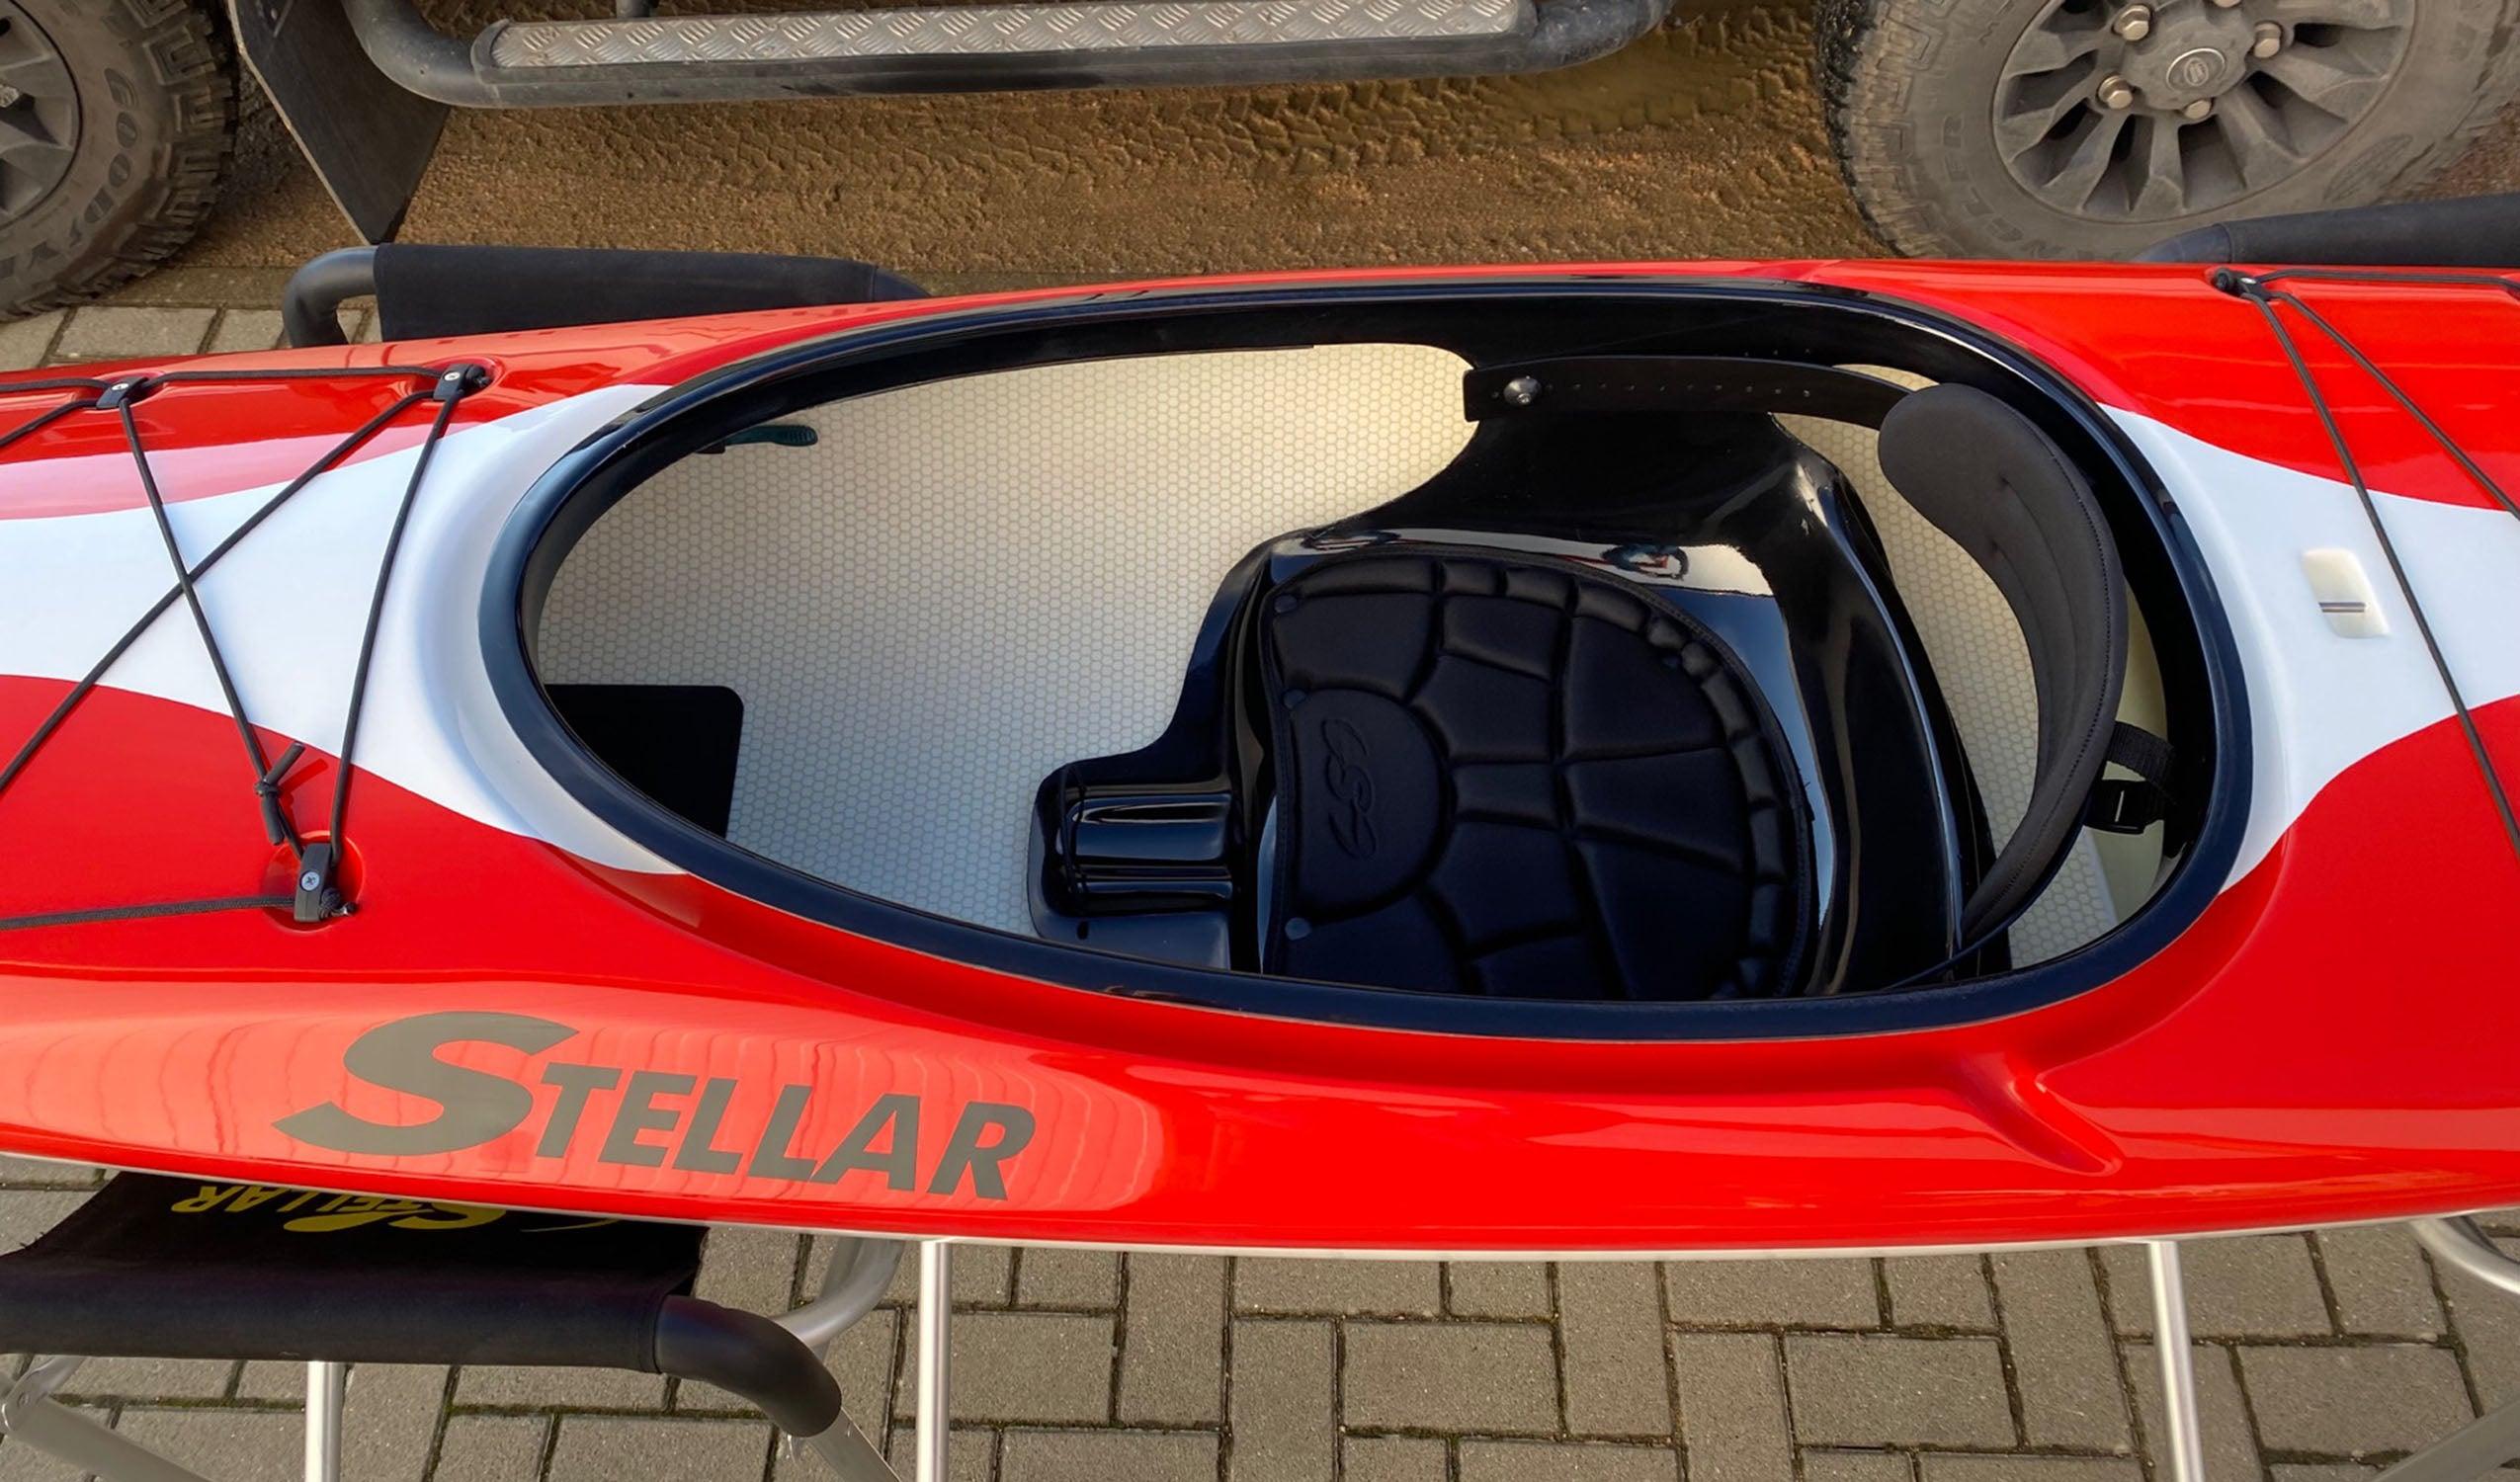 Produktbild von Kajak " S12 Advantage-rot weiß " der Marke STELLAR Lightweight für 2290.00 €. Erhältlich online bei Lite Venture ( www.liteventure.de )